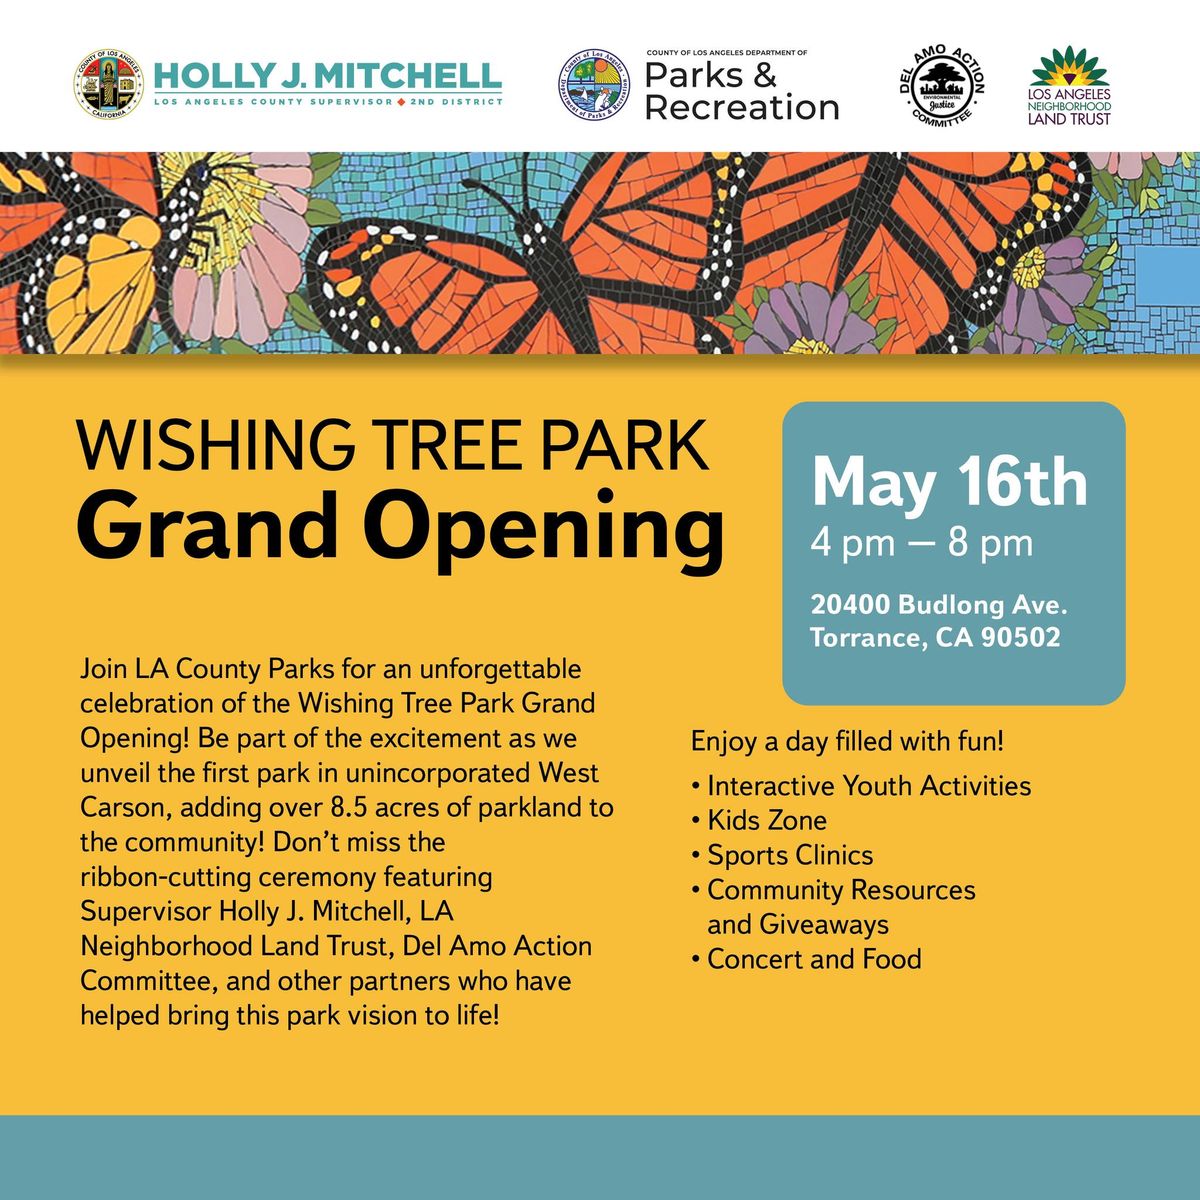 Wishing Tree Park Grand Opening 